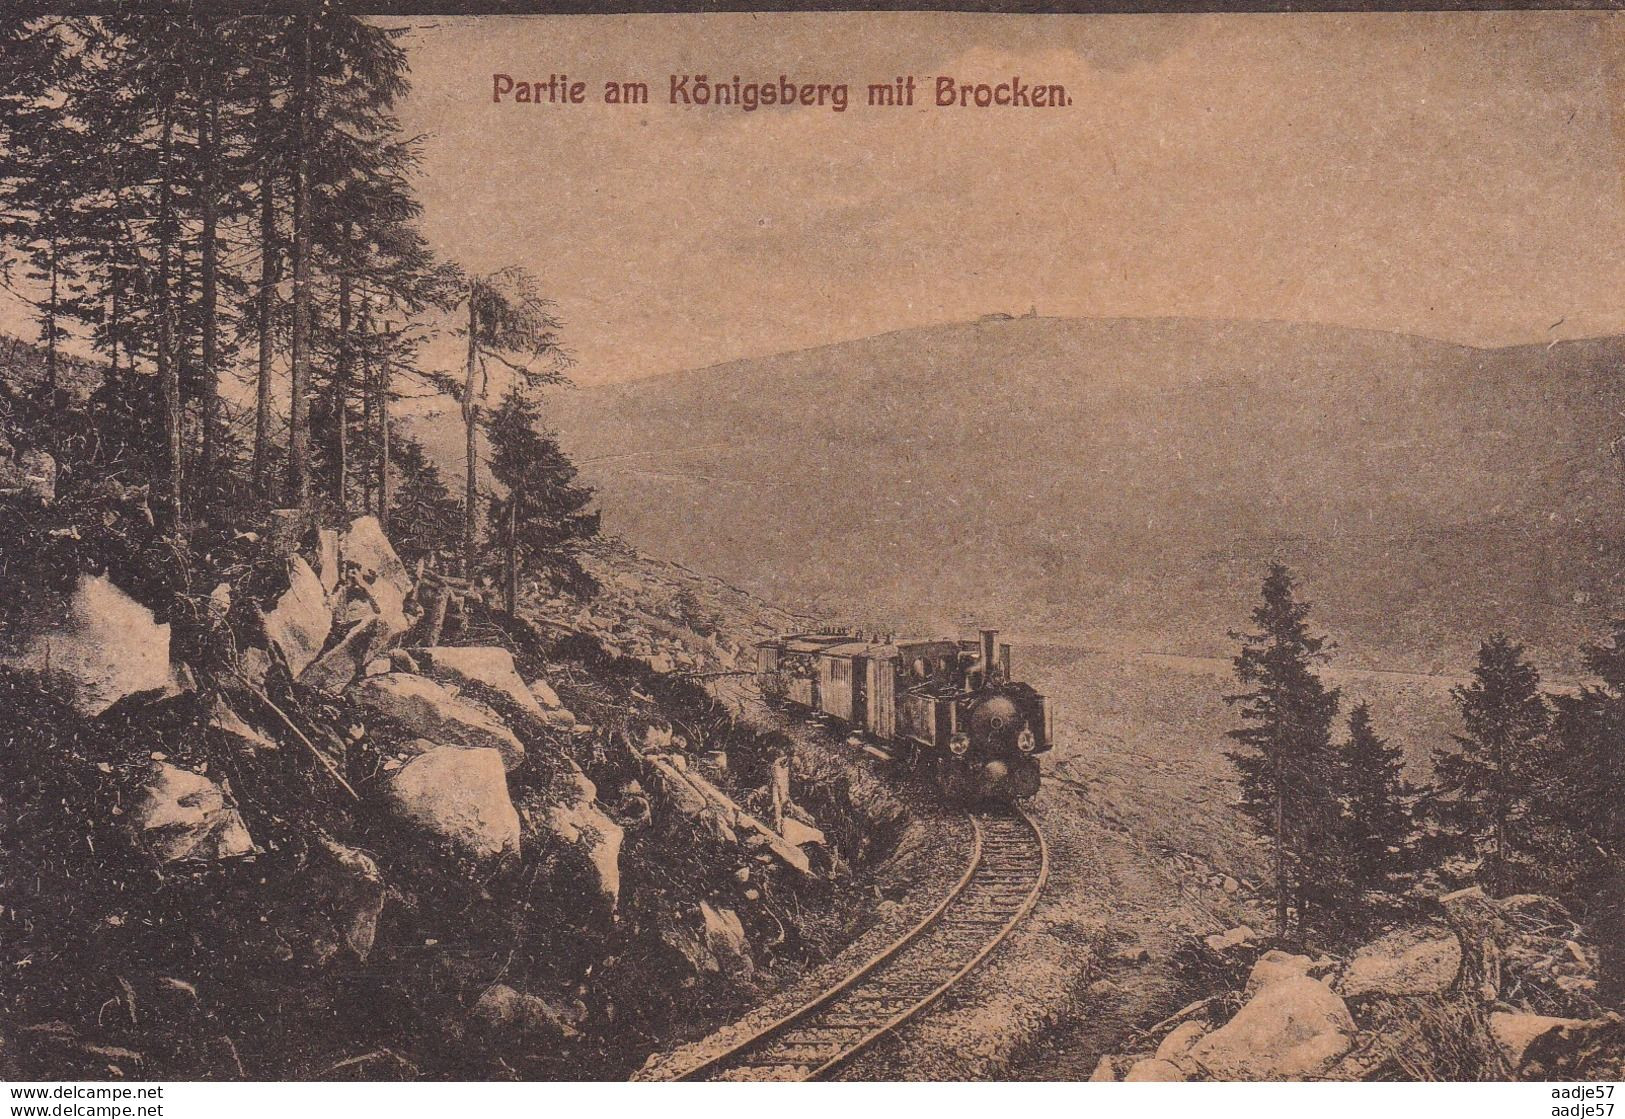 Deutschland Germany Brocken Königsberg - Trains